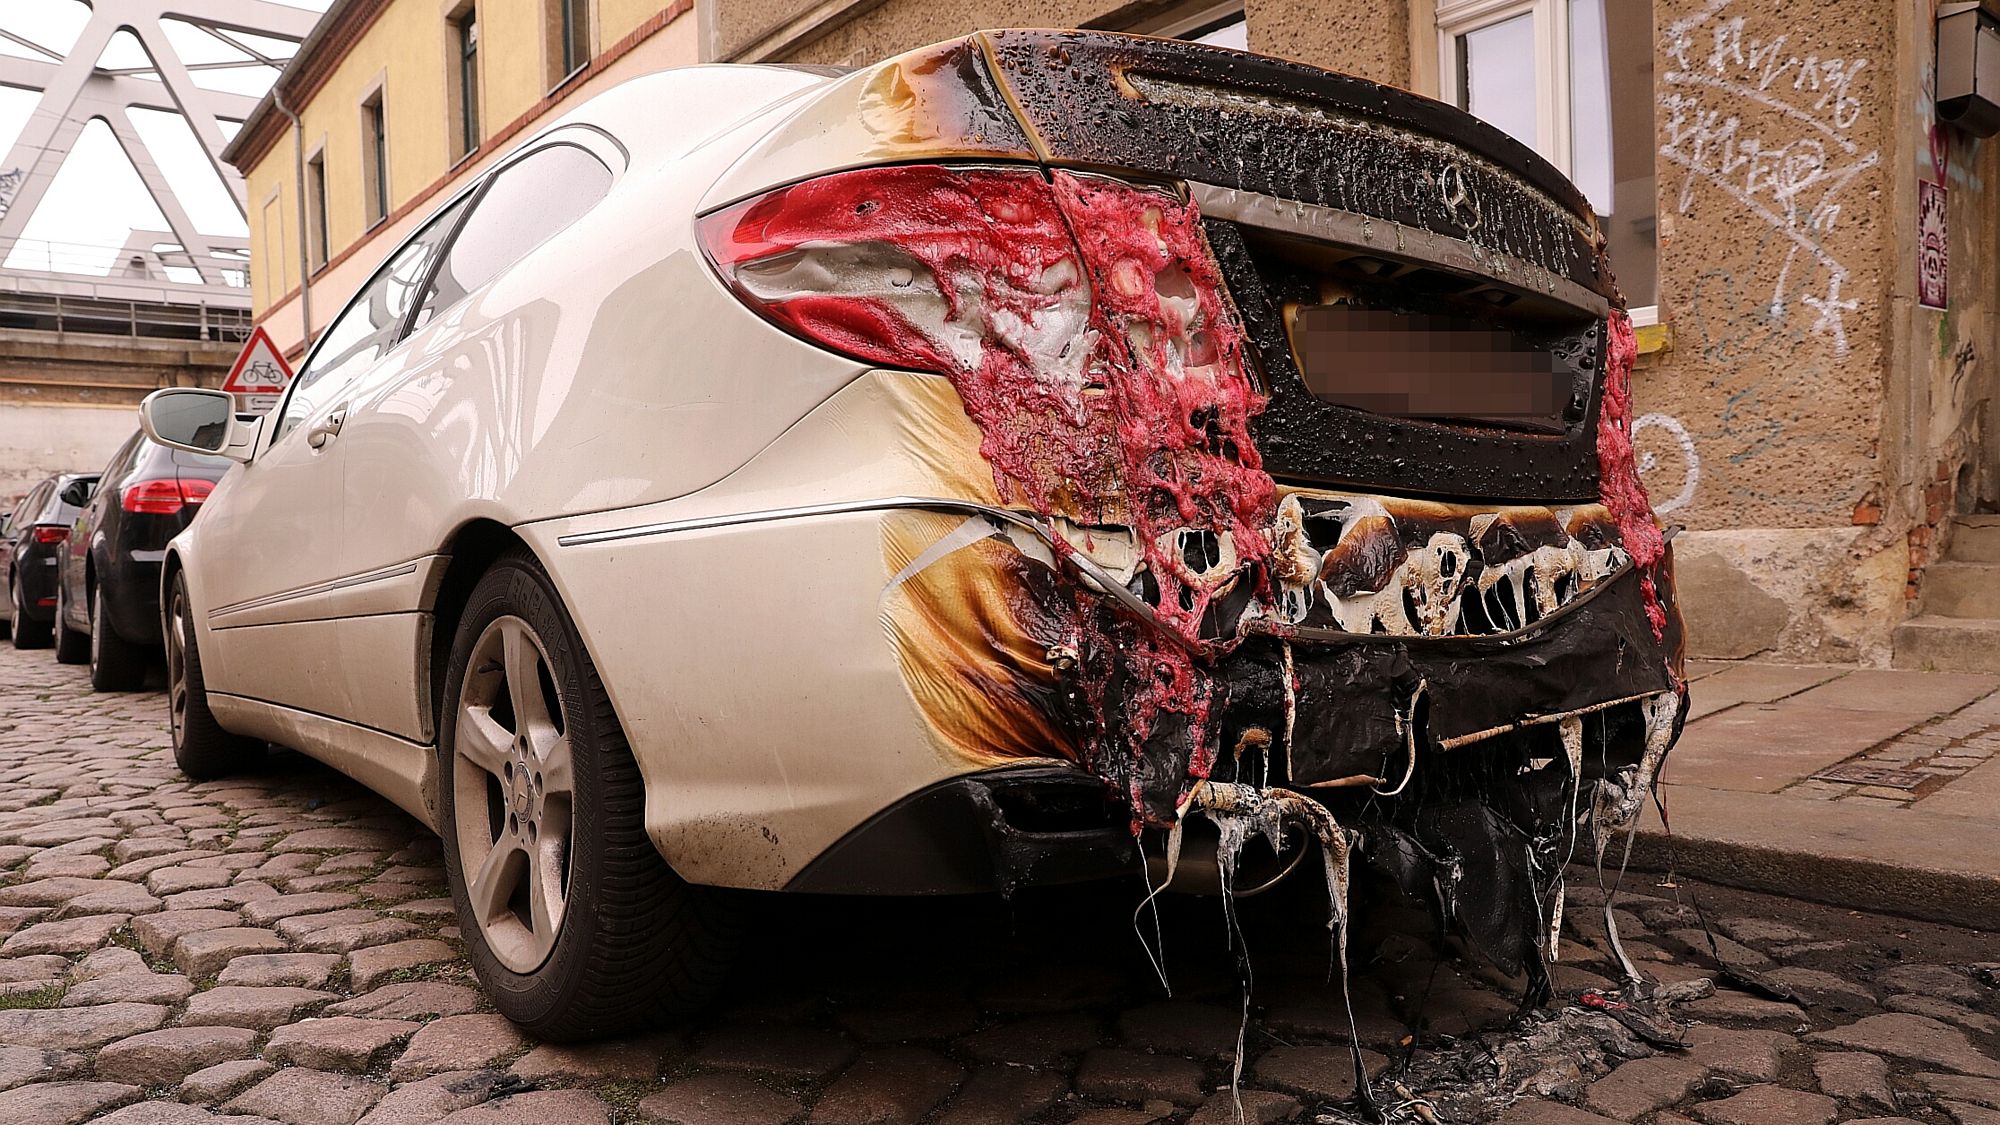 Das benachbarte Auto wurde durch den Brand in Mitleidenschaft gezogen. Foto: Tino Plunert